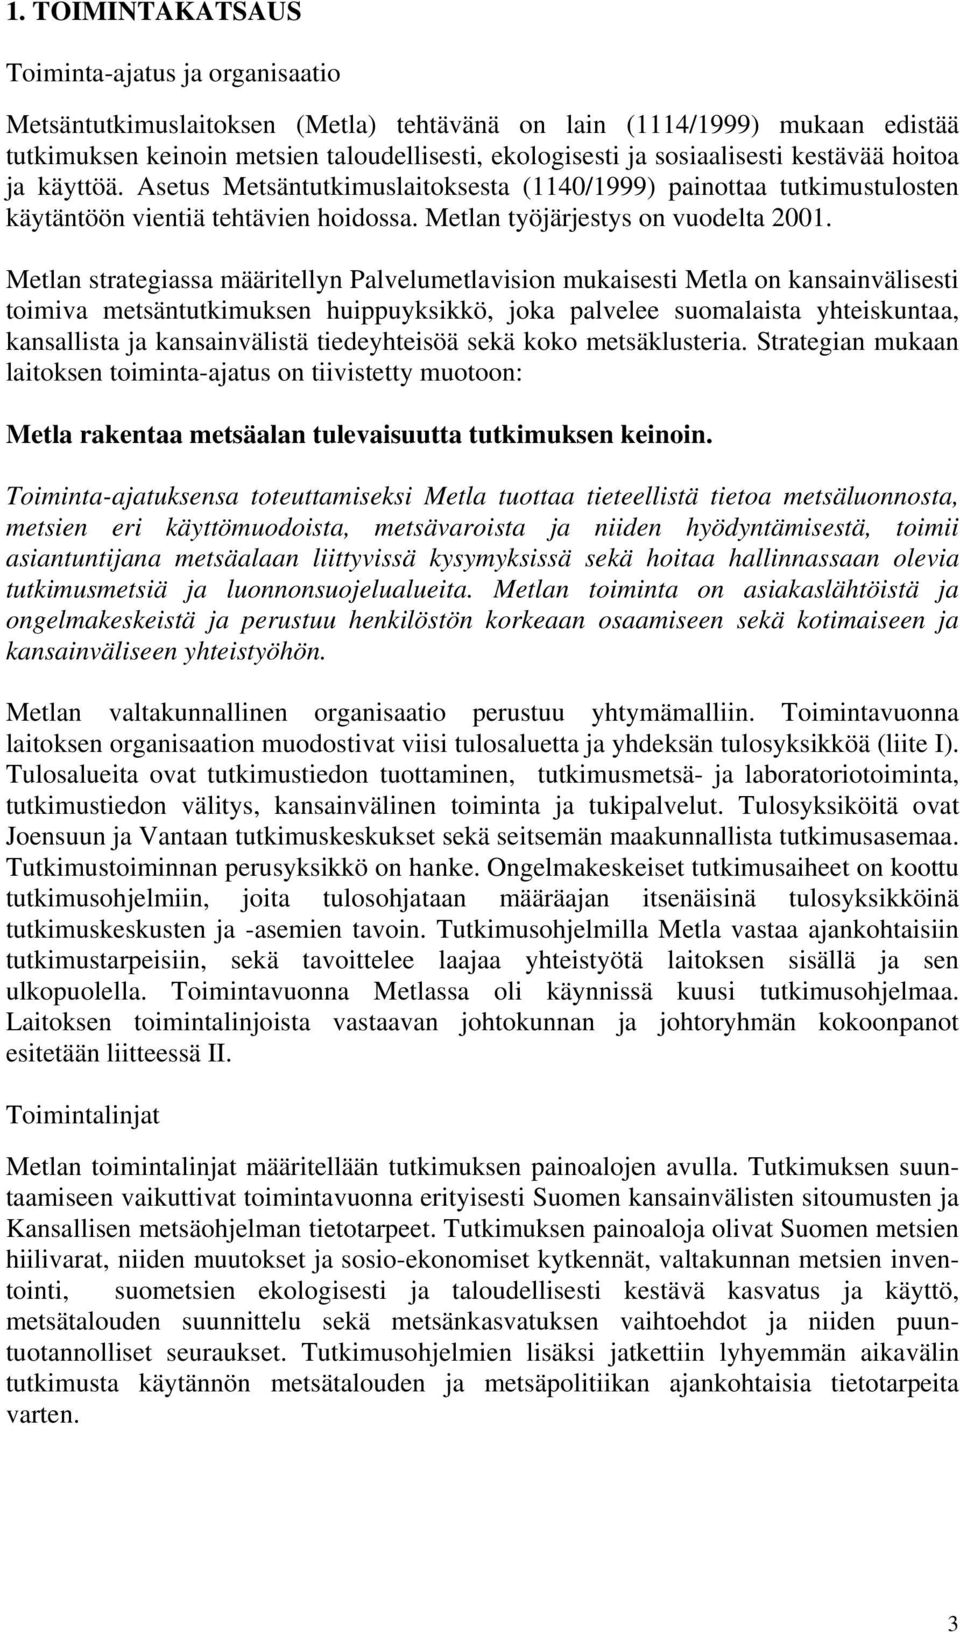 Metlan strategiassa määritellyn Palvelumetlavision mukaisesti Metla on kansainvälisesti toimiva metsäntutkimuksen huippuyksikkö, joka palvelee suomalaista yhteiskuntaa, kansallista ja kansainvälistä